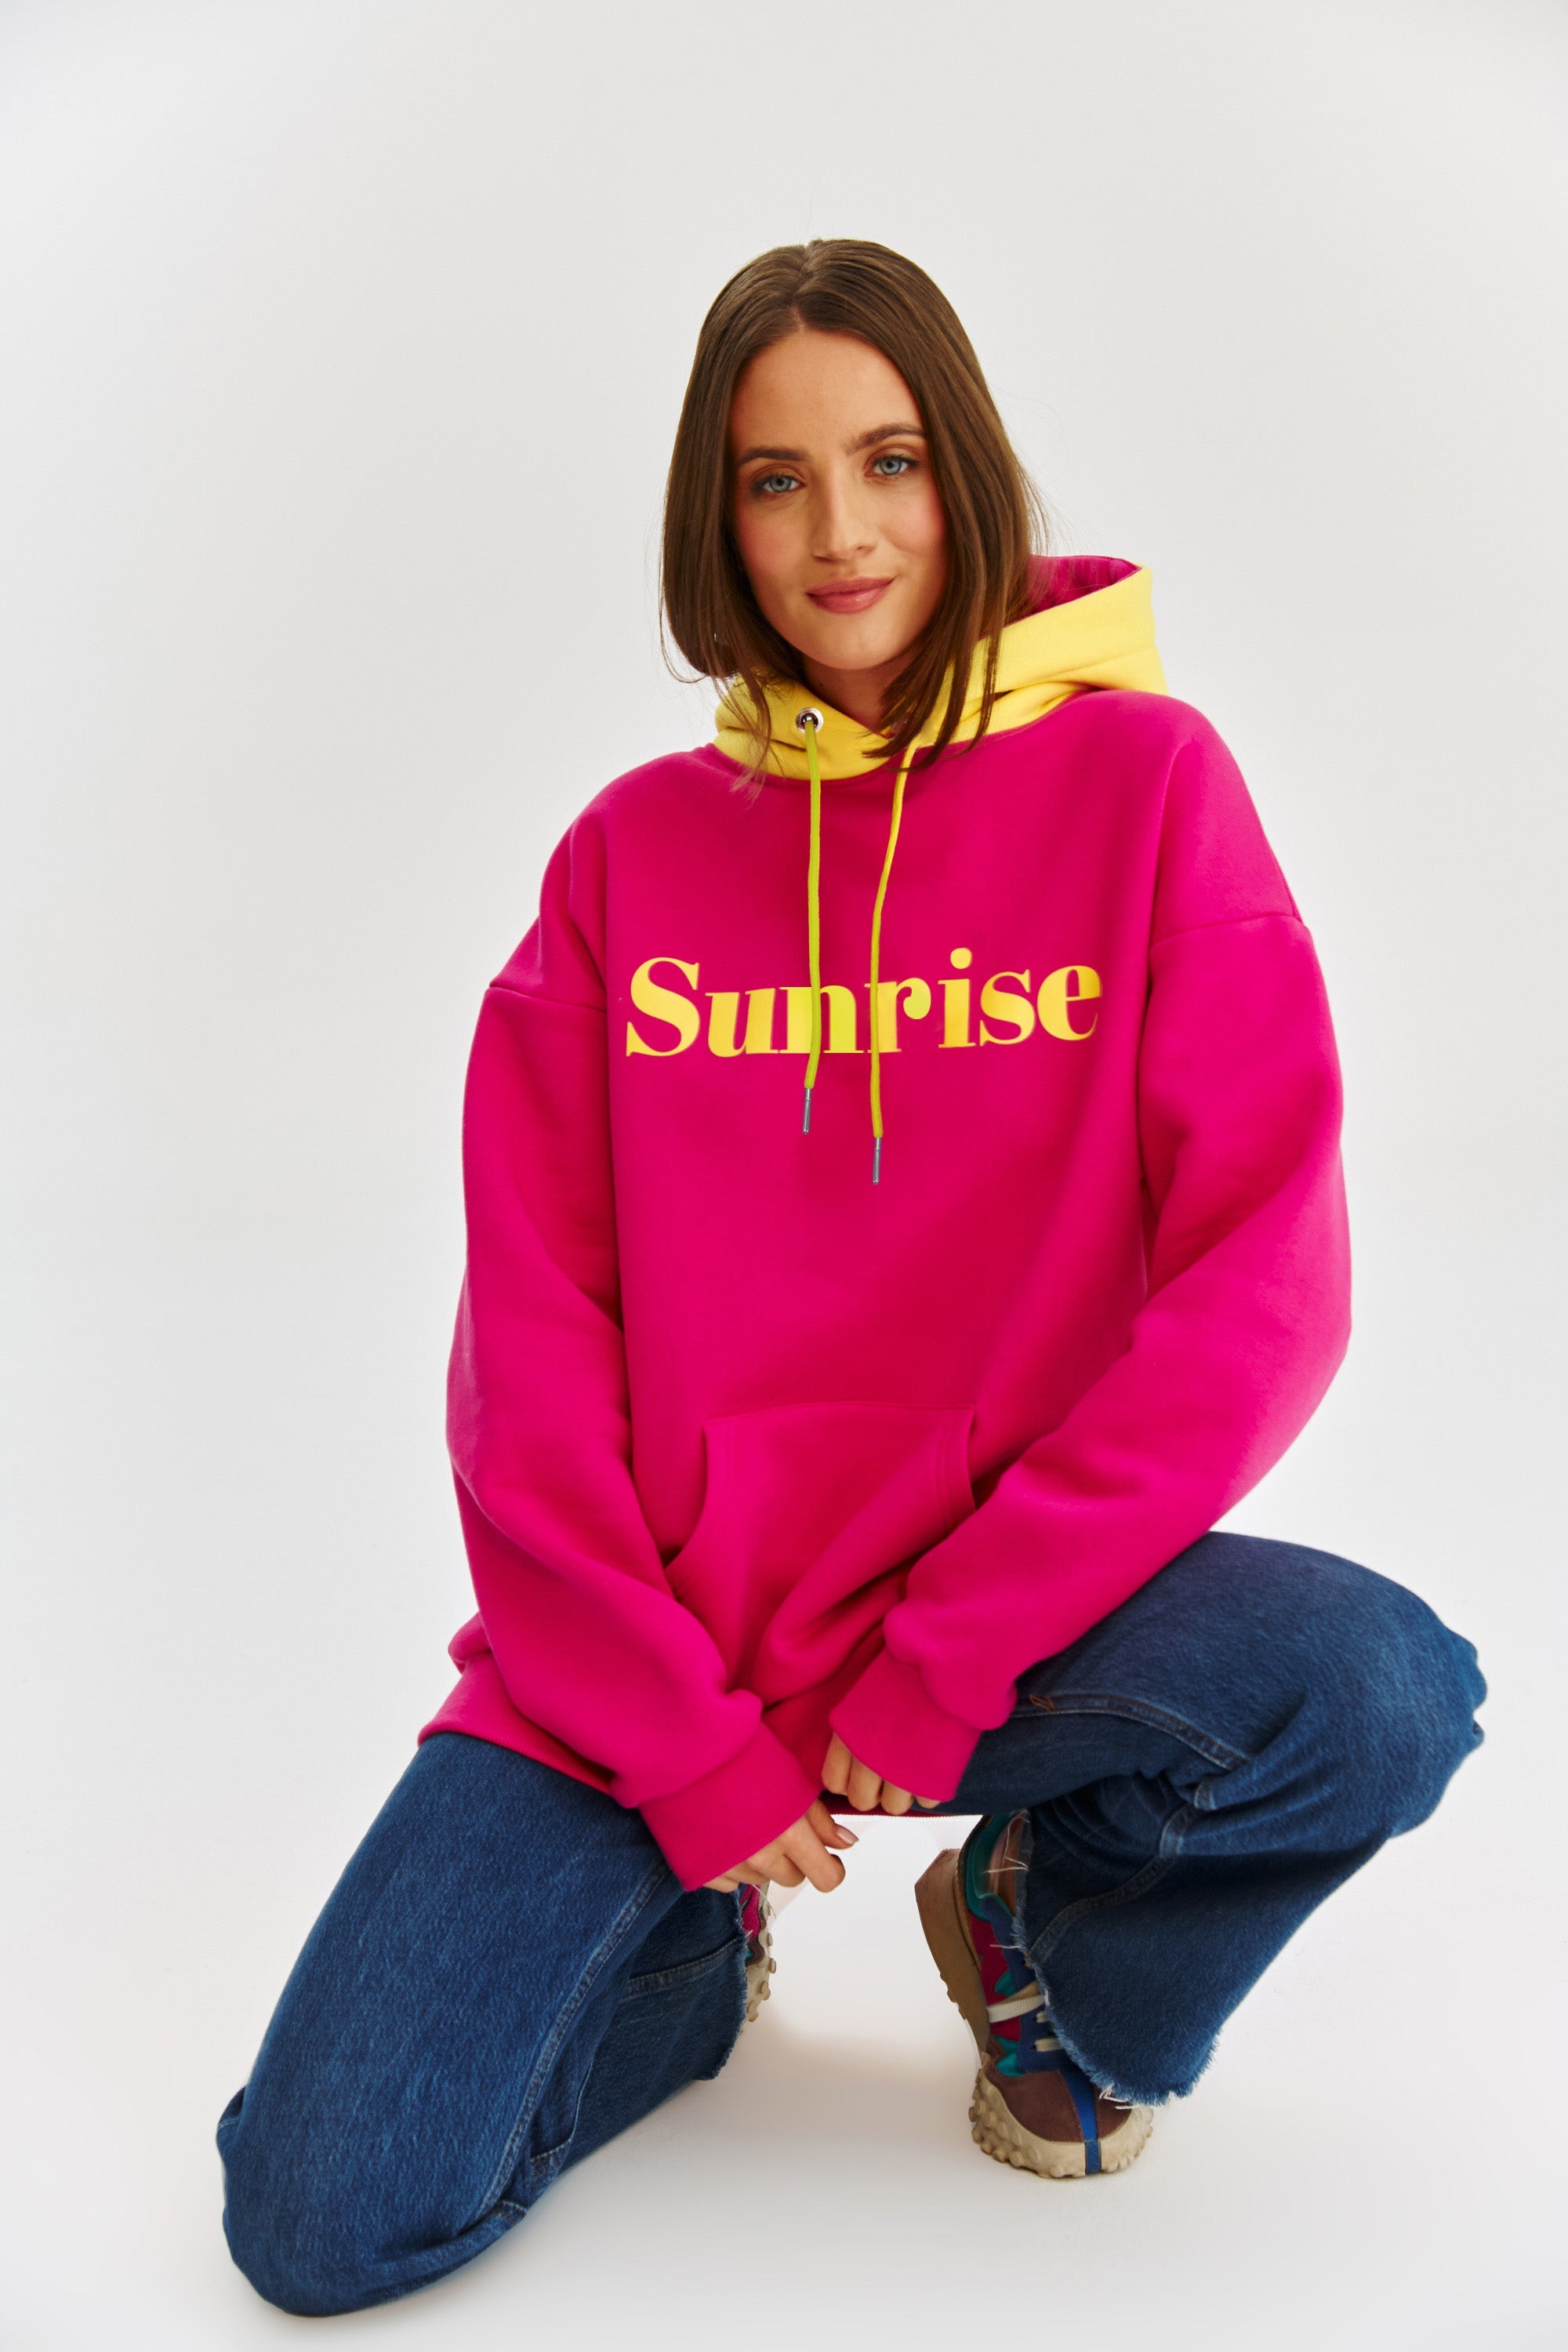 Sunrise Sunset hoodie